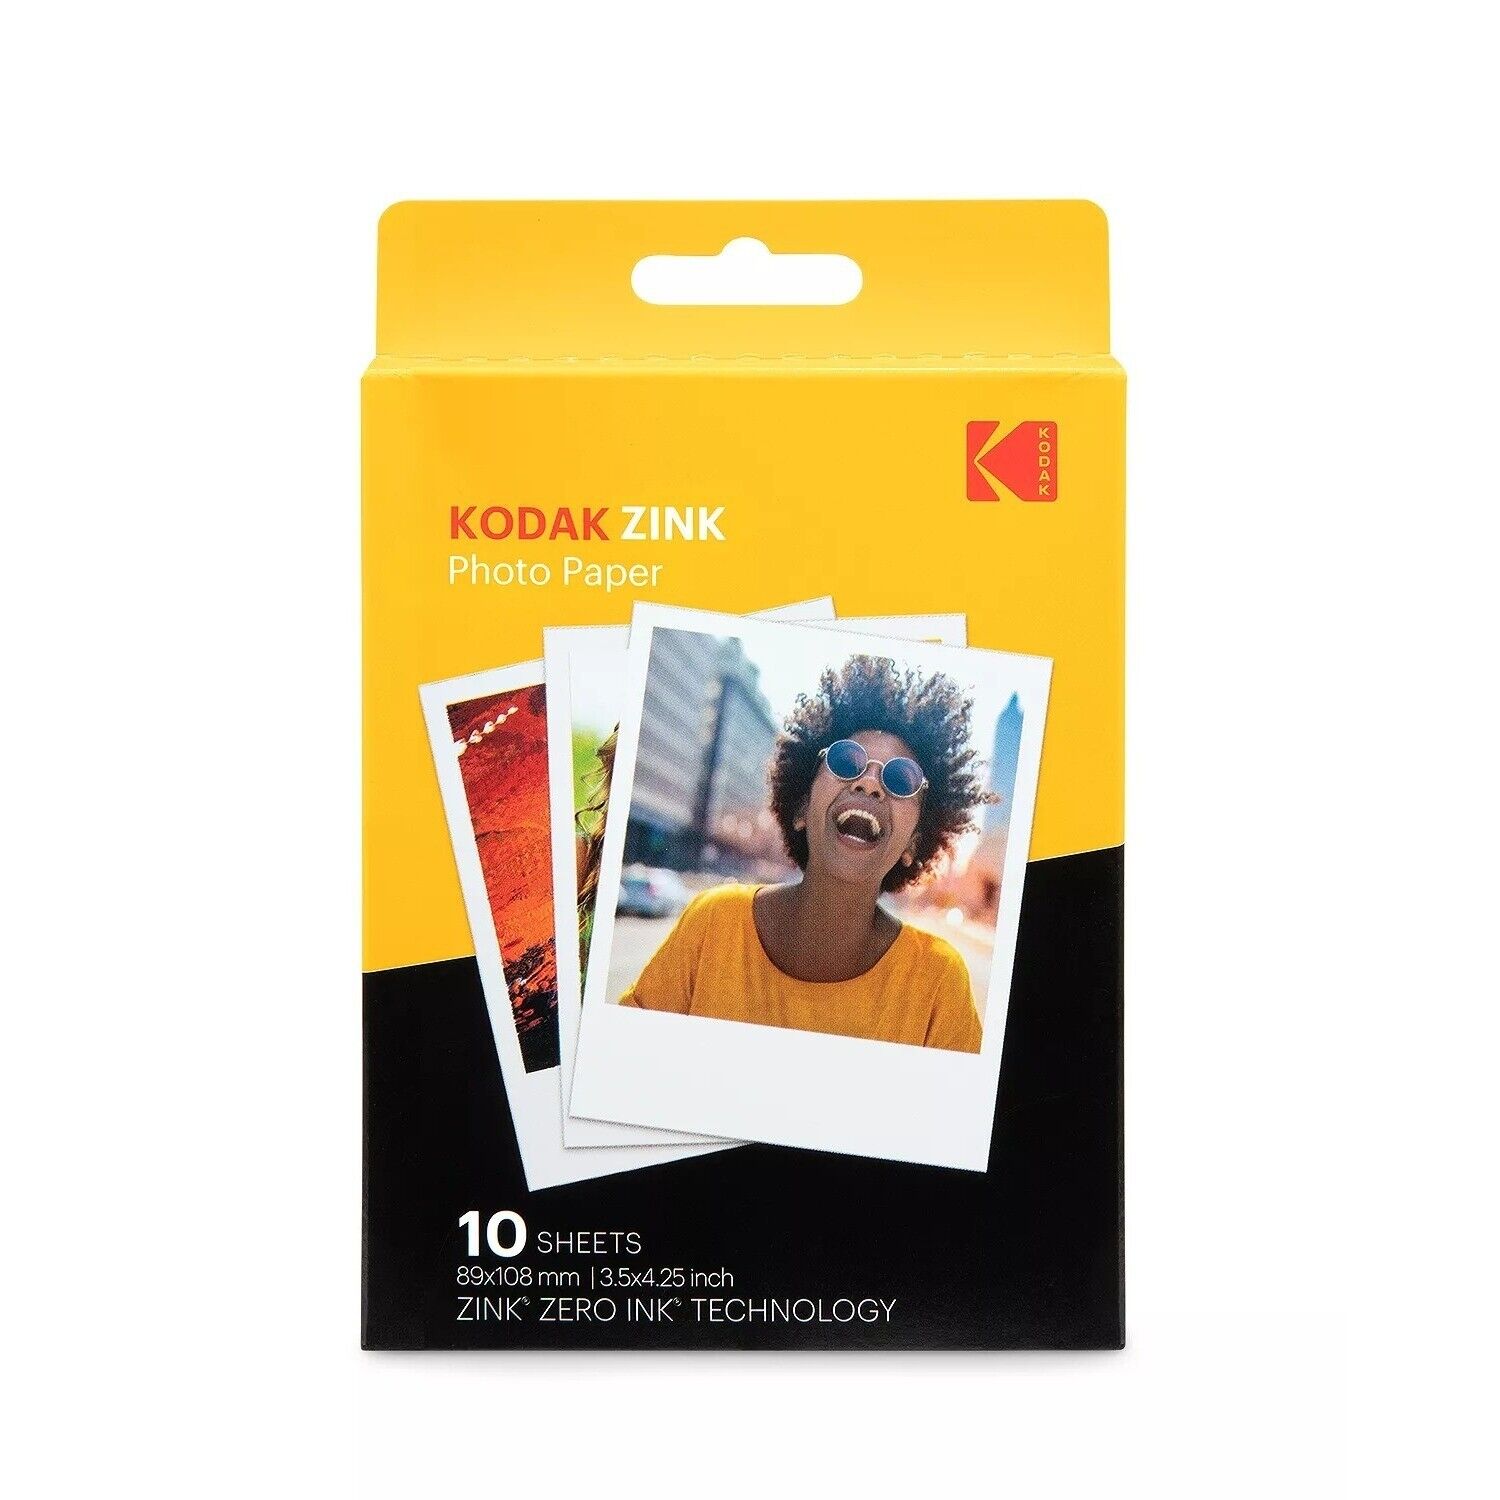 Kodak Zink Photo Paper 3.5